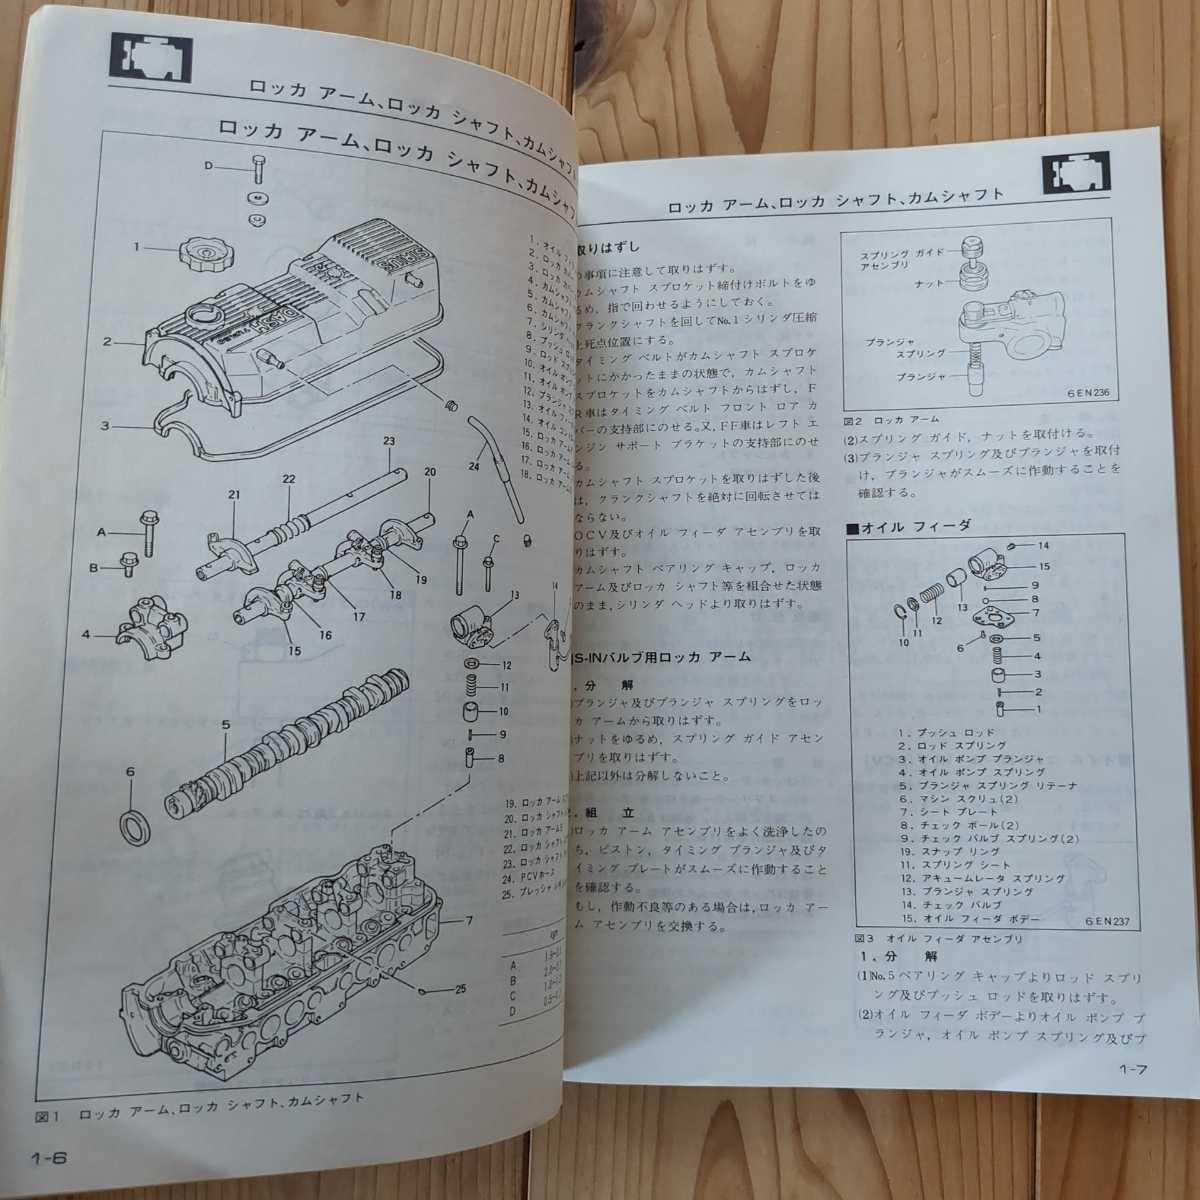 三菱 スタリオン エンジン編　SIRIUS DASH G63B 整備解説書 MITSUBISHI　84.5 1984　カタログ　ターボチャージャ ターボチャージャー　_画像9